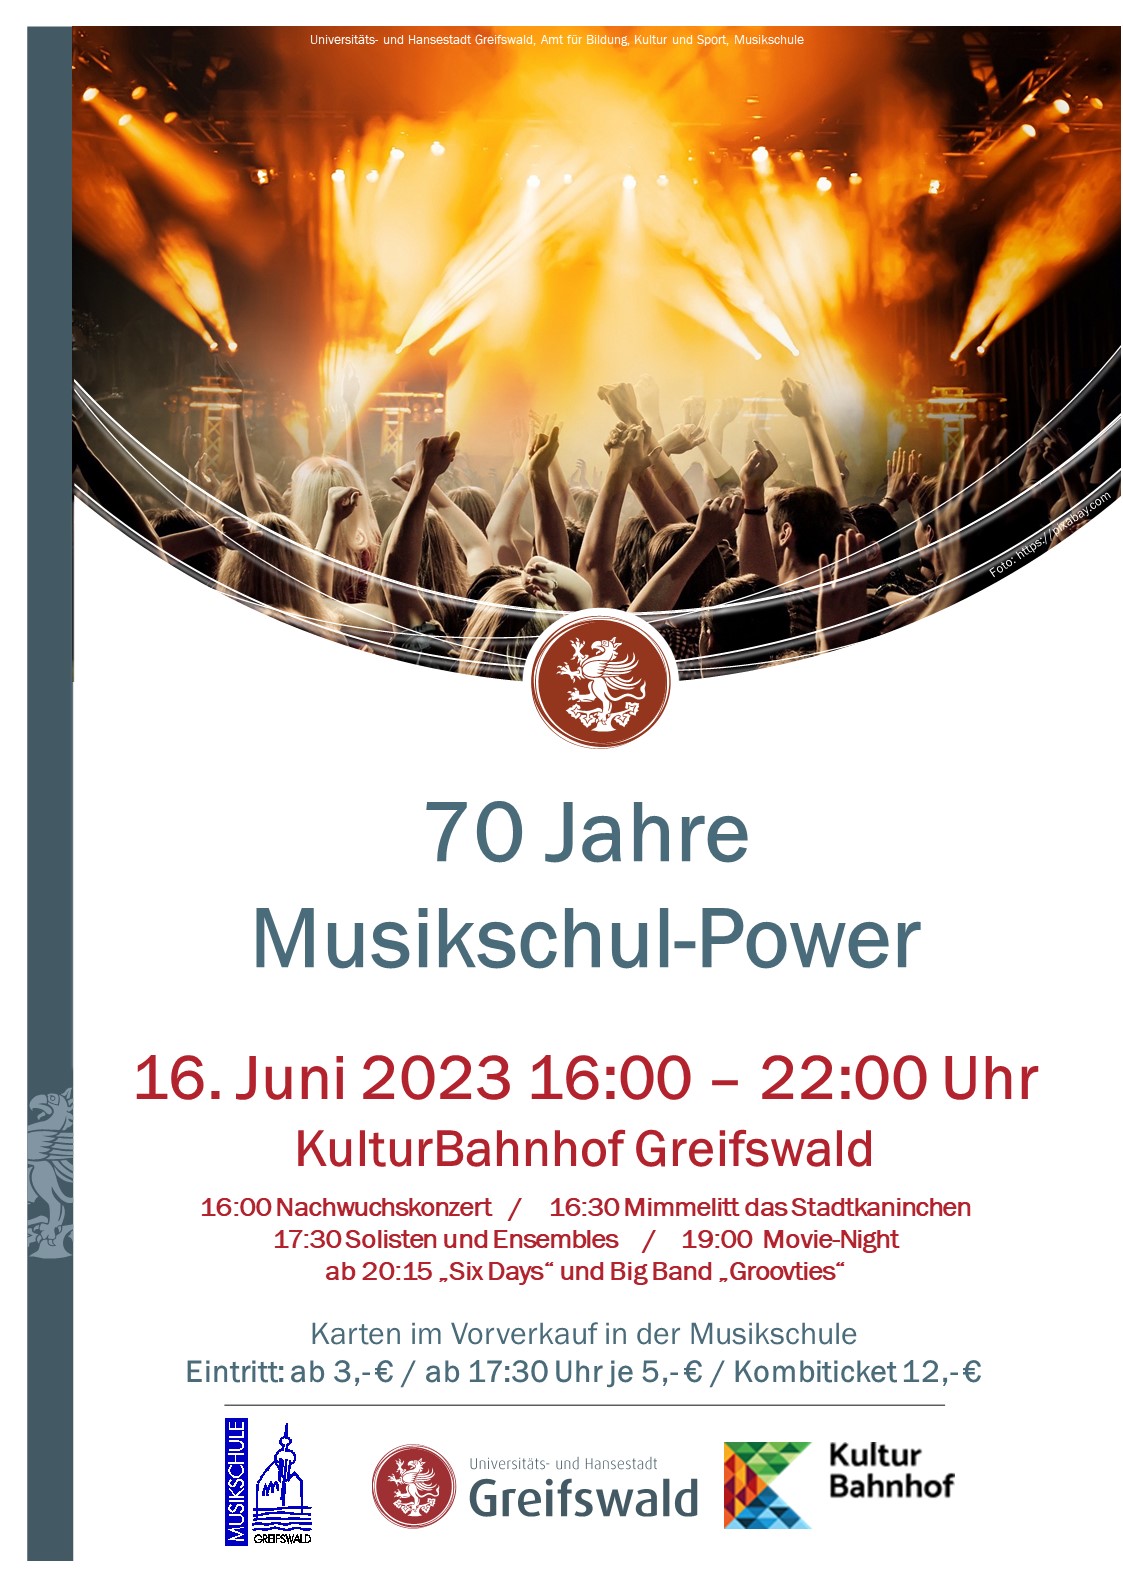 70 Jahre Musikschul-Power